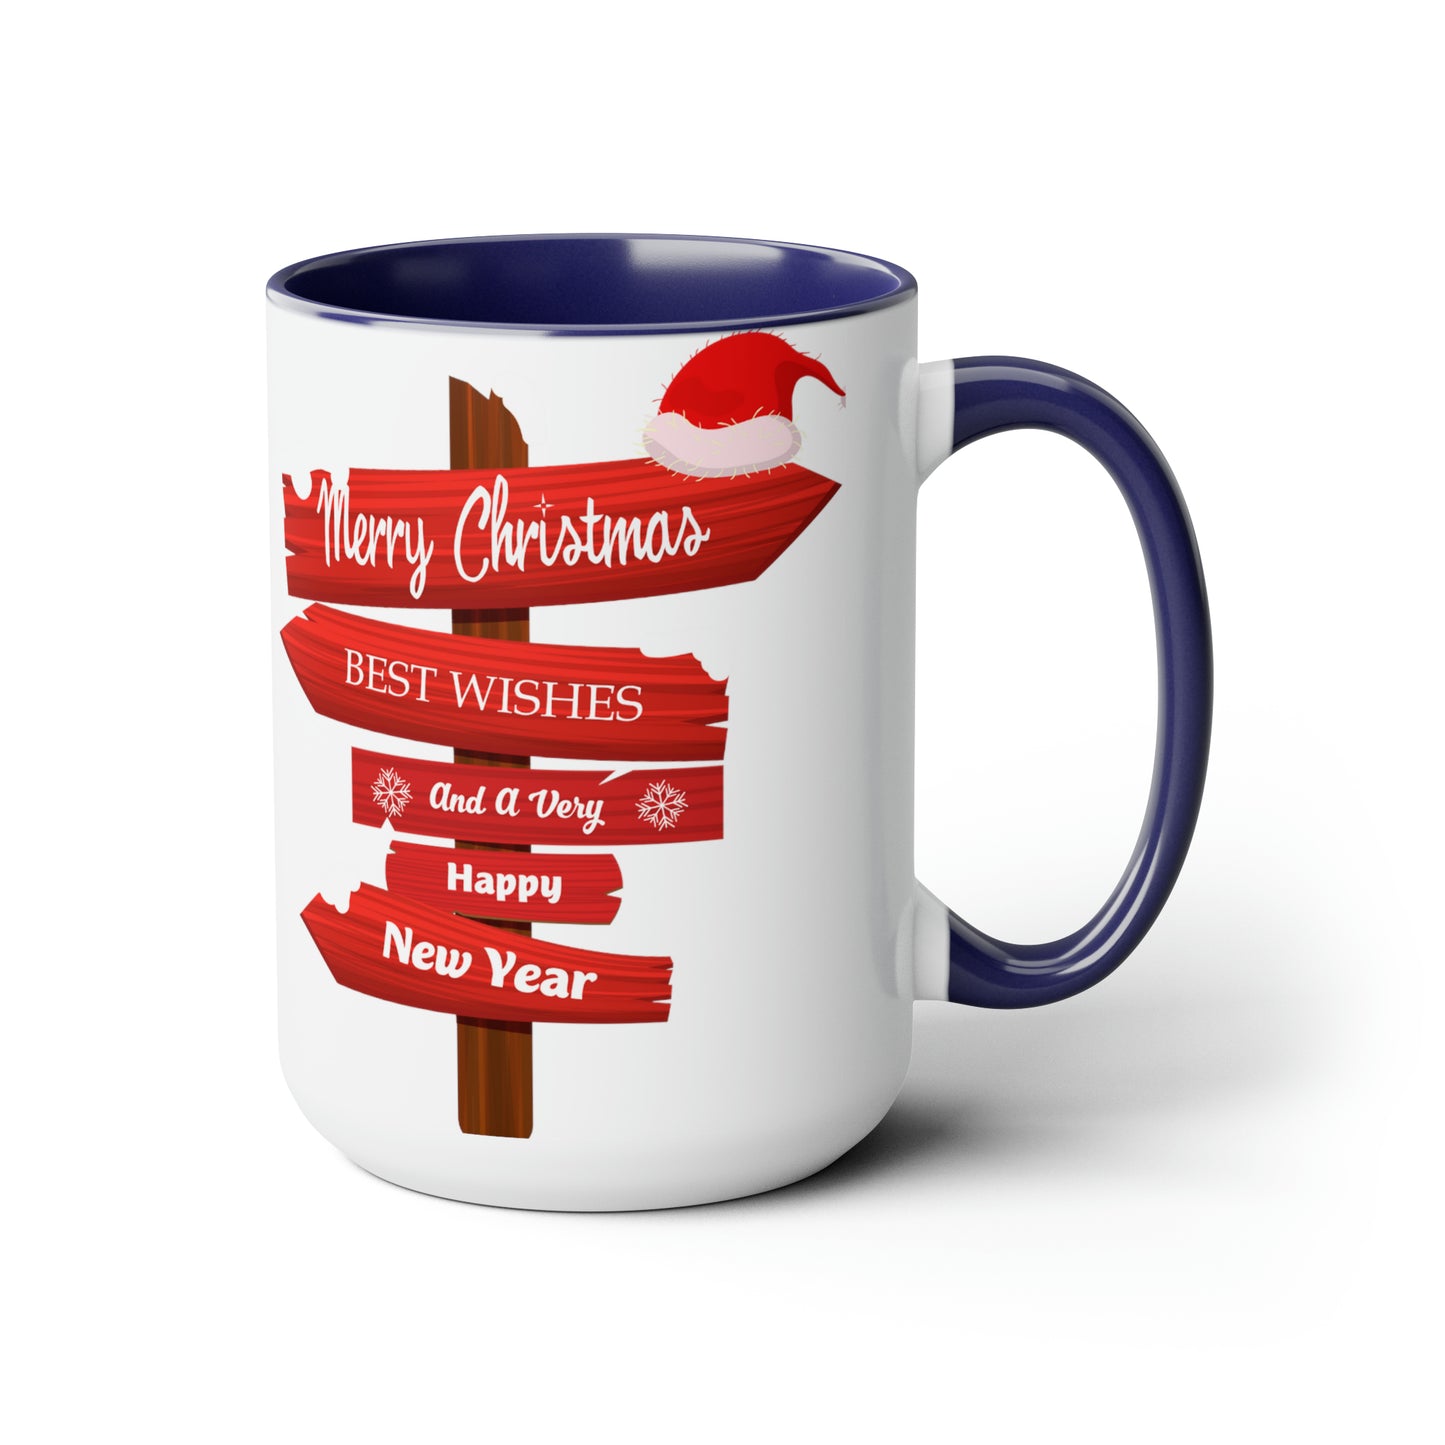 Merry Christmas Two-Tone Coffee Mugs, 15oz